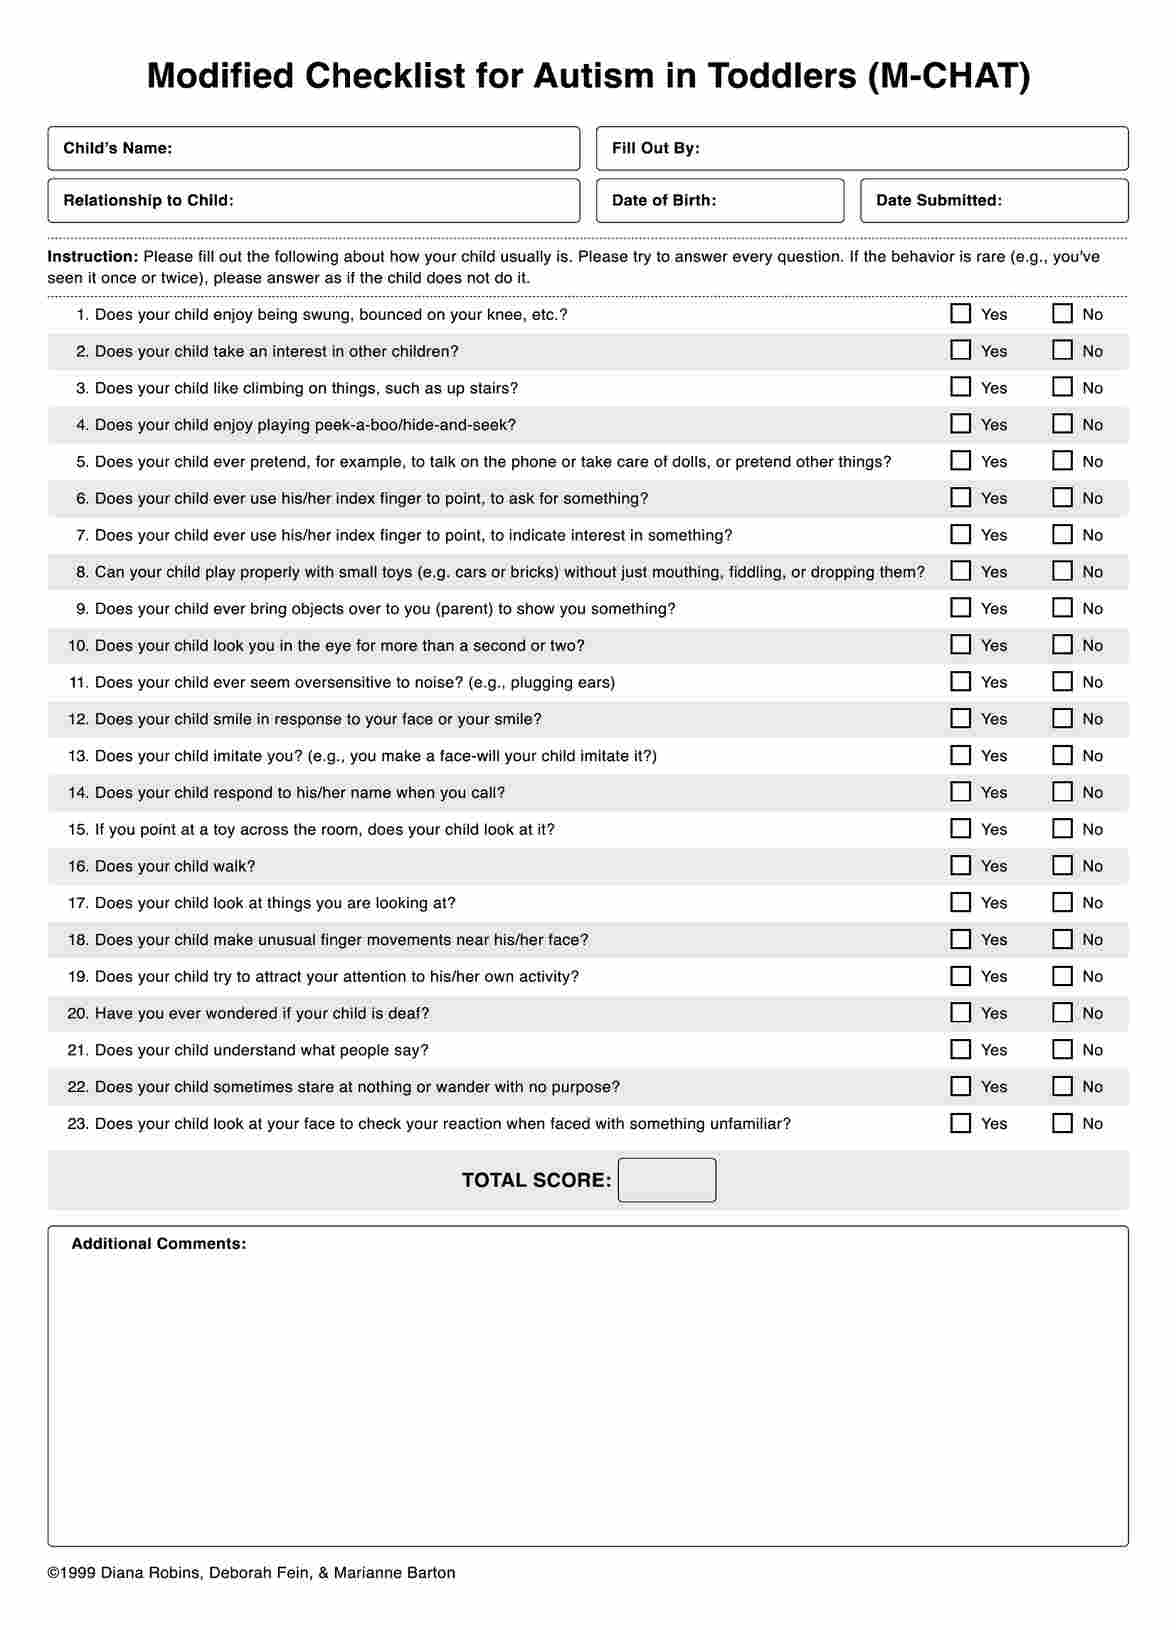 Checklist Modificada para Autismo en niños (M-CHAT) PDF Example